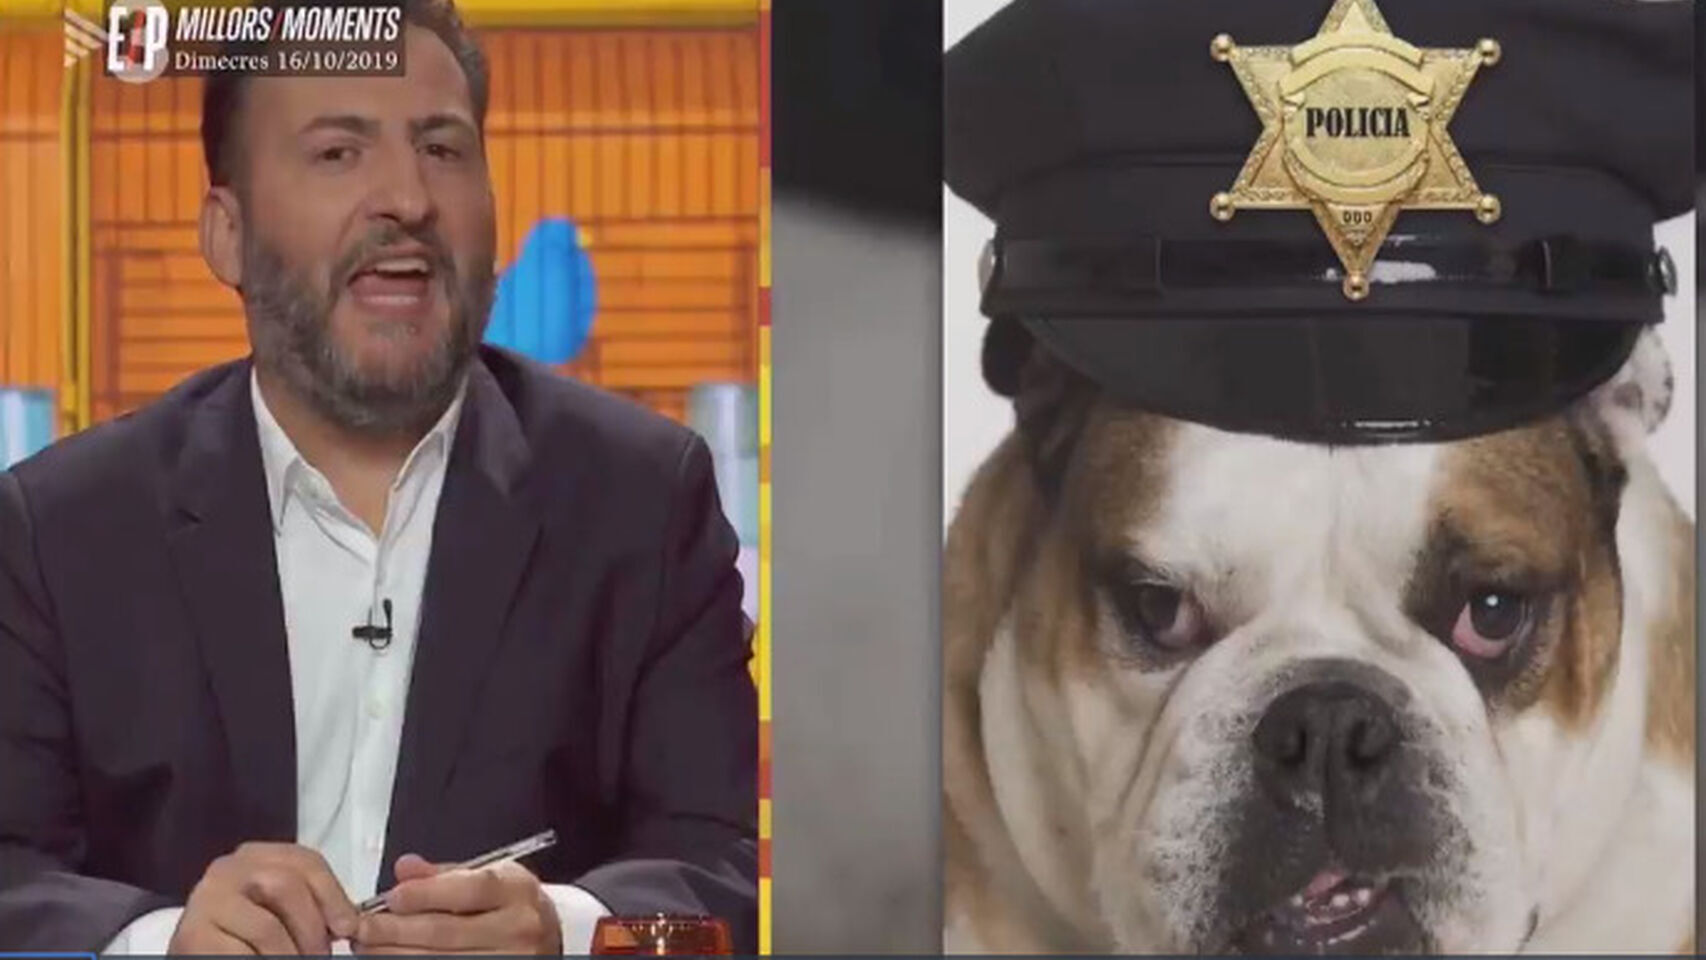 TV3 compara a los Mossos d’Esquadra con perros y los llama “malparidos” y “putos perros de mierda”